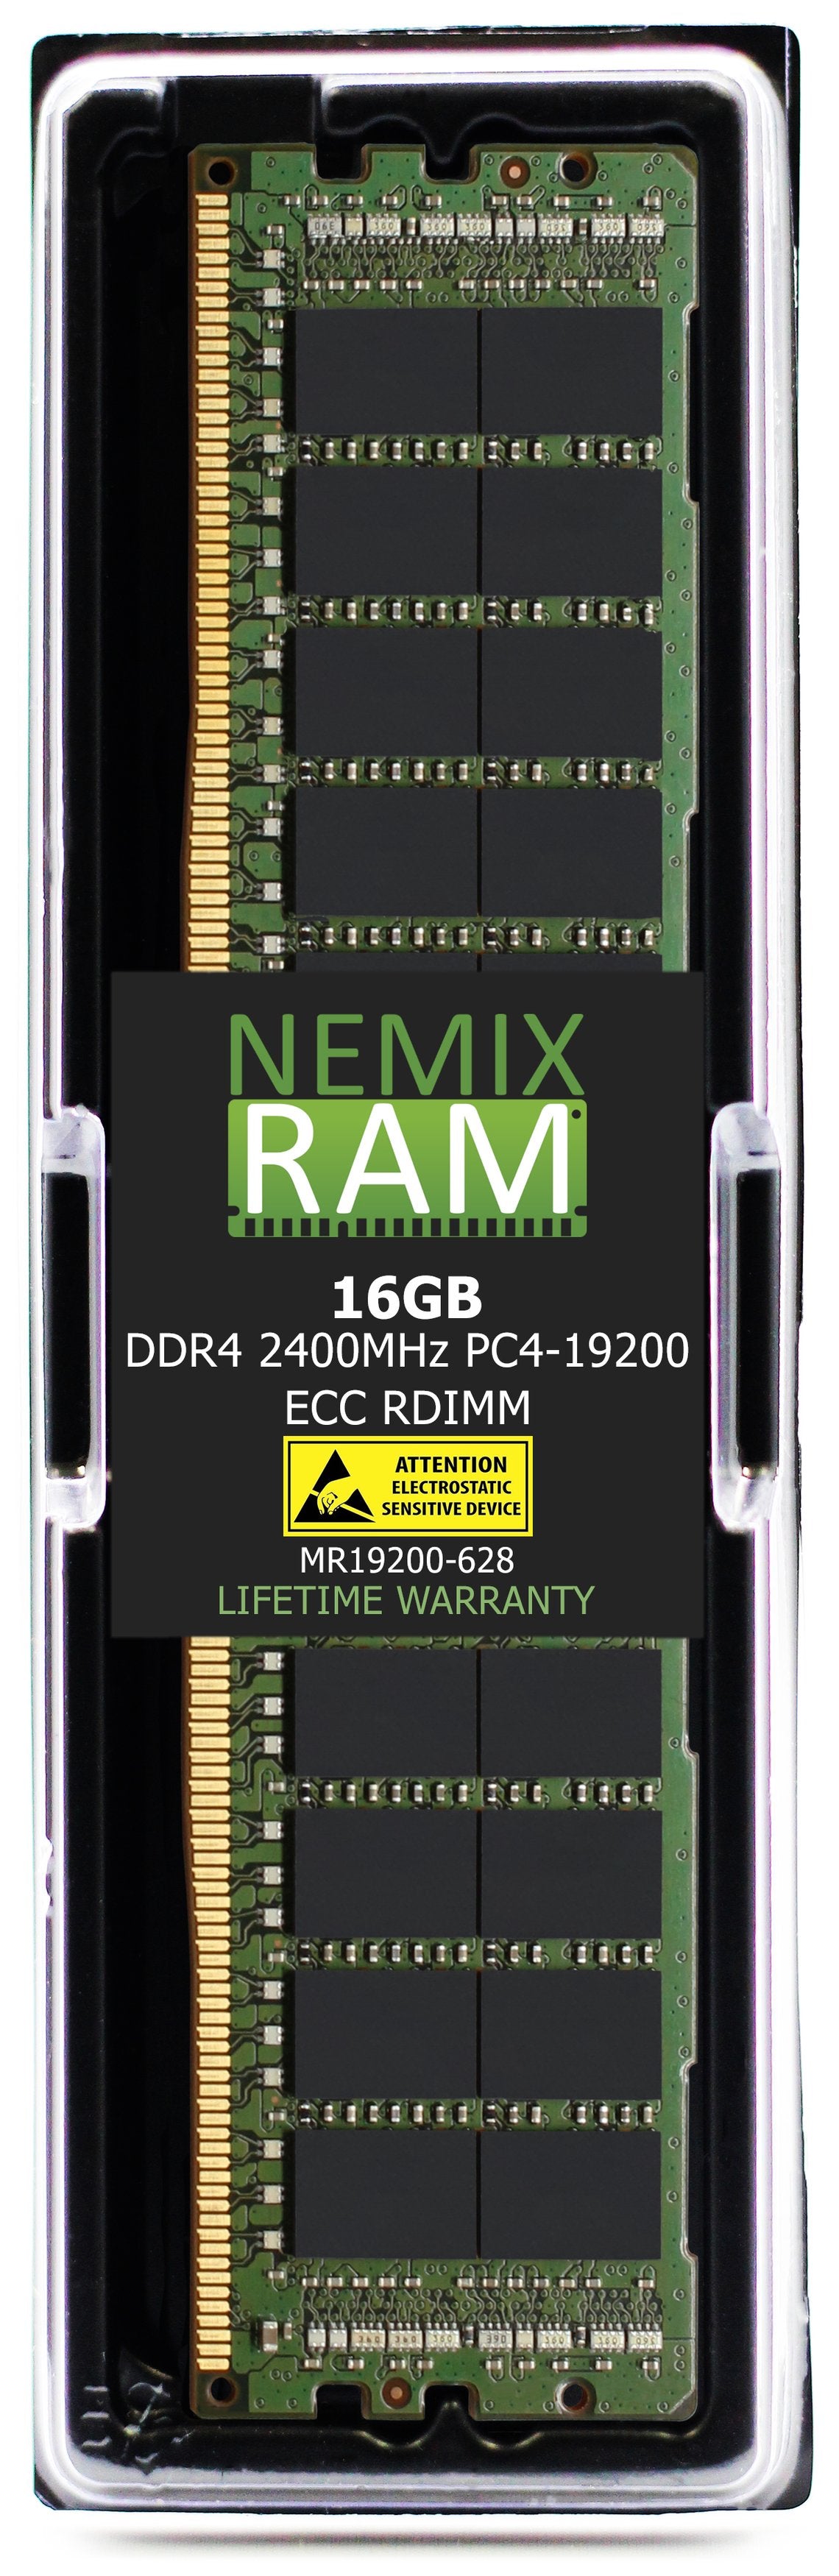 Hynix HMA82GR7CJR8N-UH 16GB DDR4 2400MHZ PC4-19200 RDIMM Compatible Memory Module